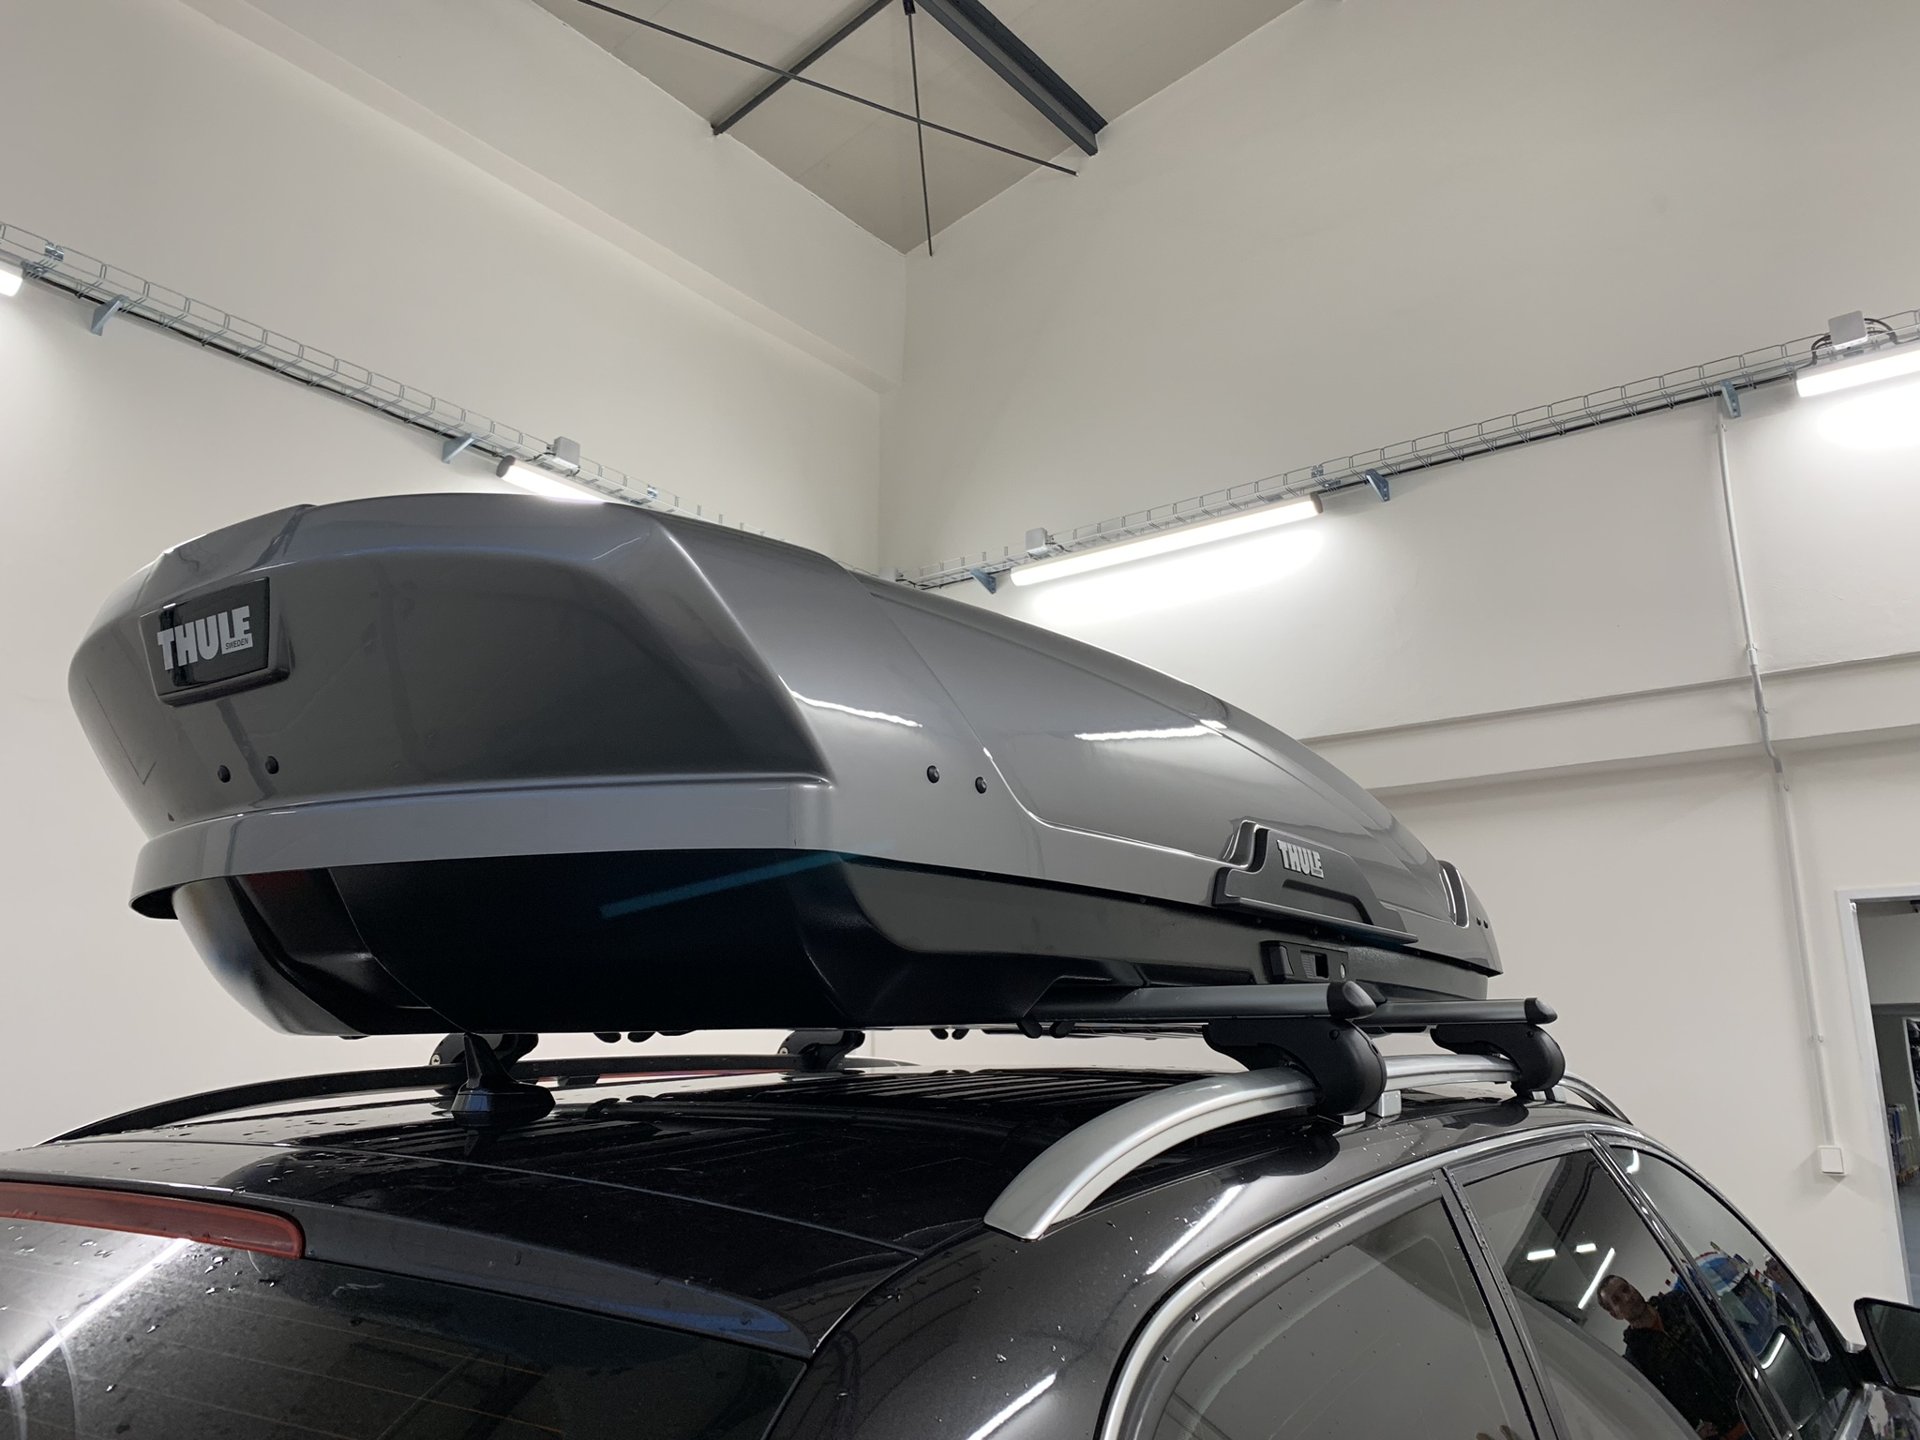 Montáž střešního boxu Thule XT XL Titan na vozidlo zákazníka v dílně Filson Store Uhříněves